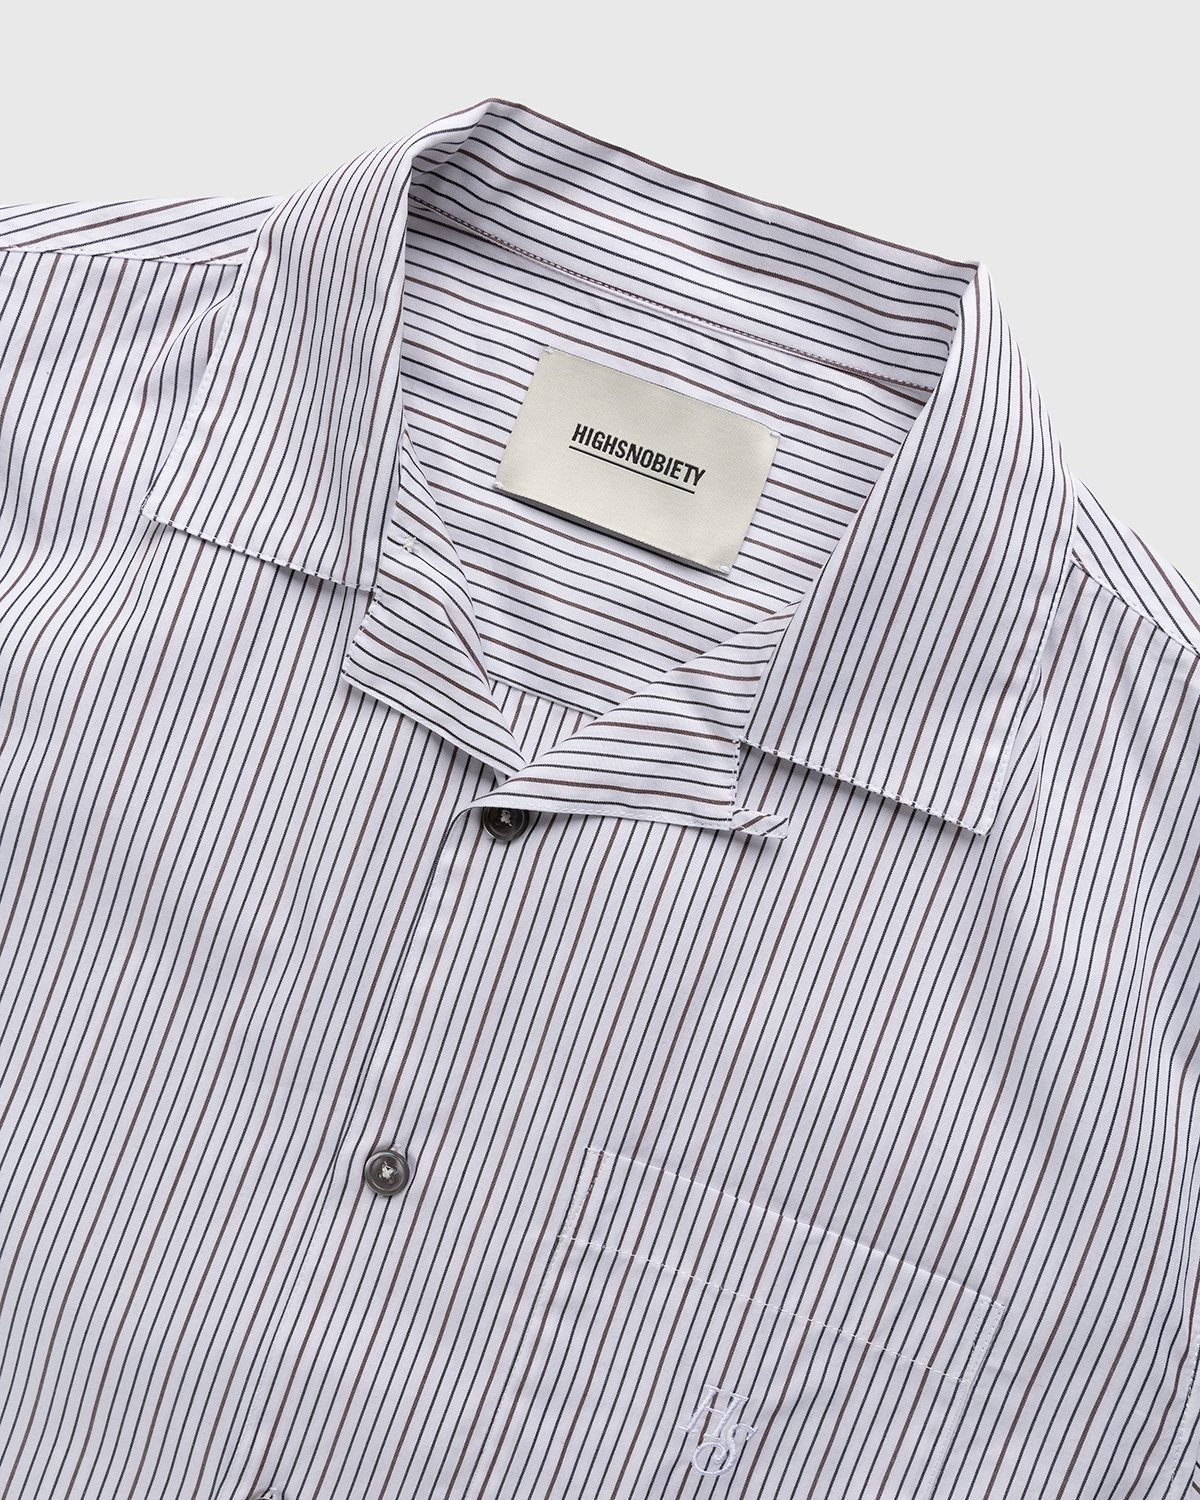 Highsnobiety – Striped Poplin Short-Sleeve Shirt White/Black - Shortsleeve Shirts - White - Image 3